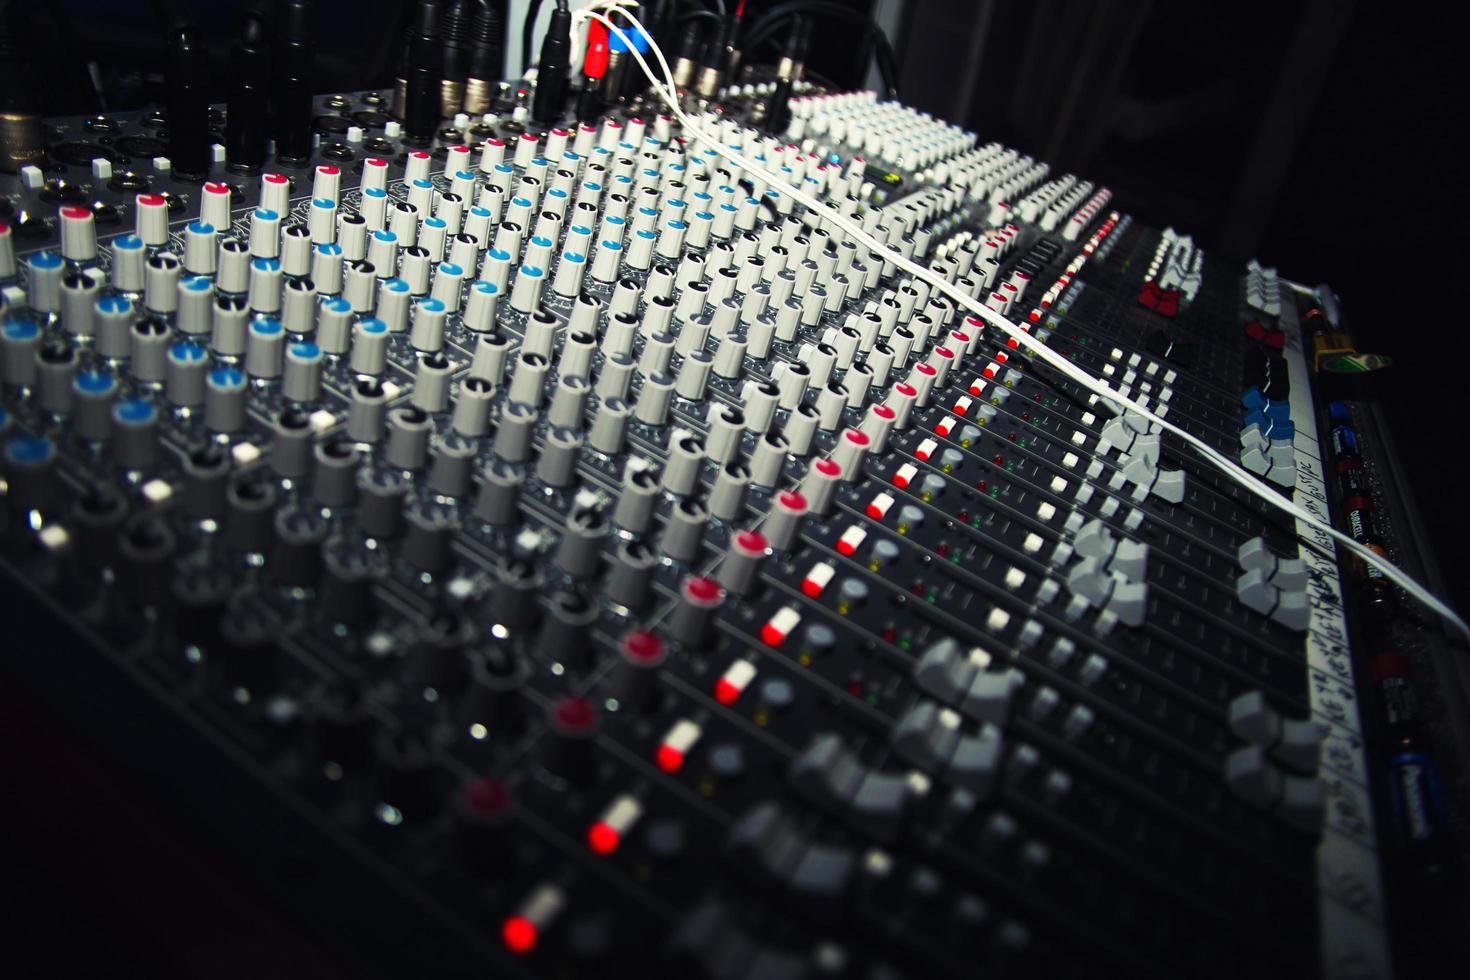 mixer per dj mixer musicale foto